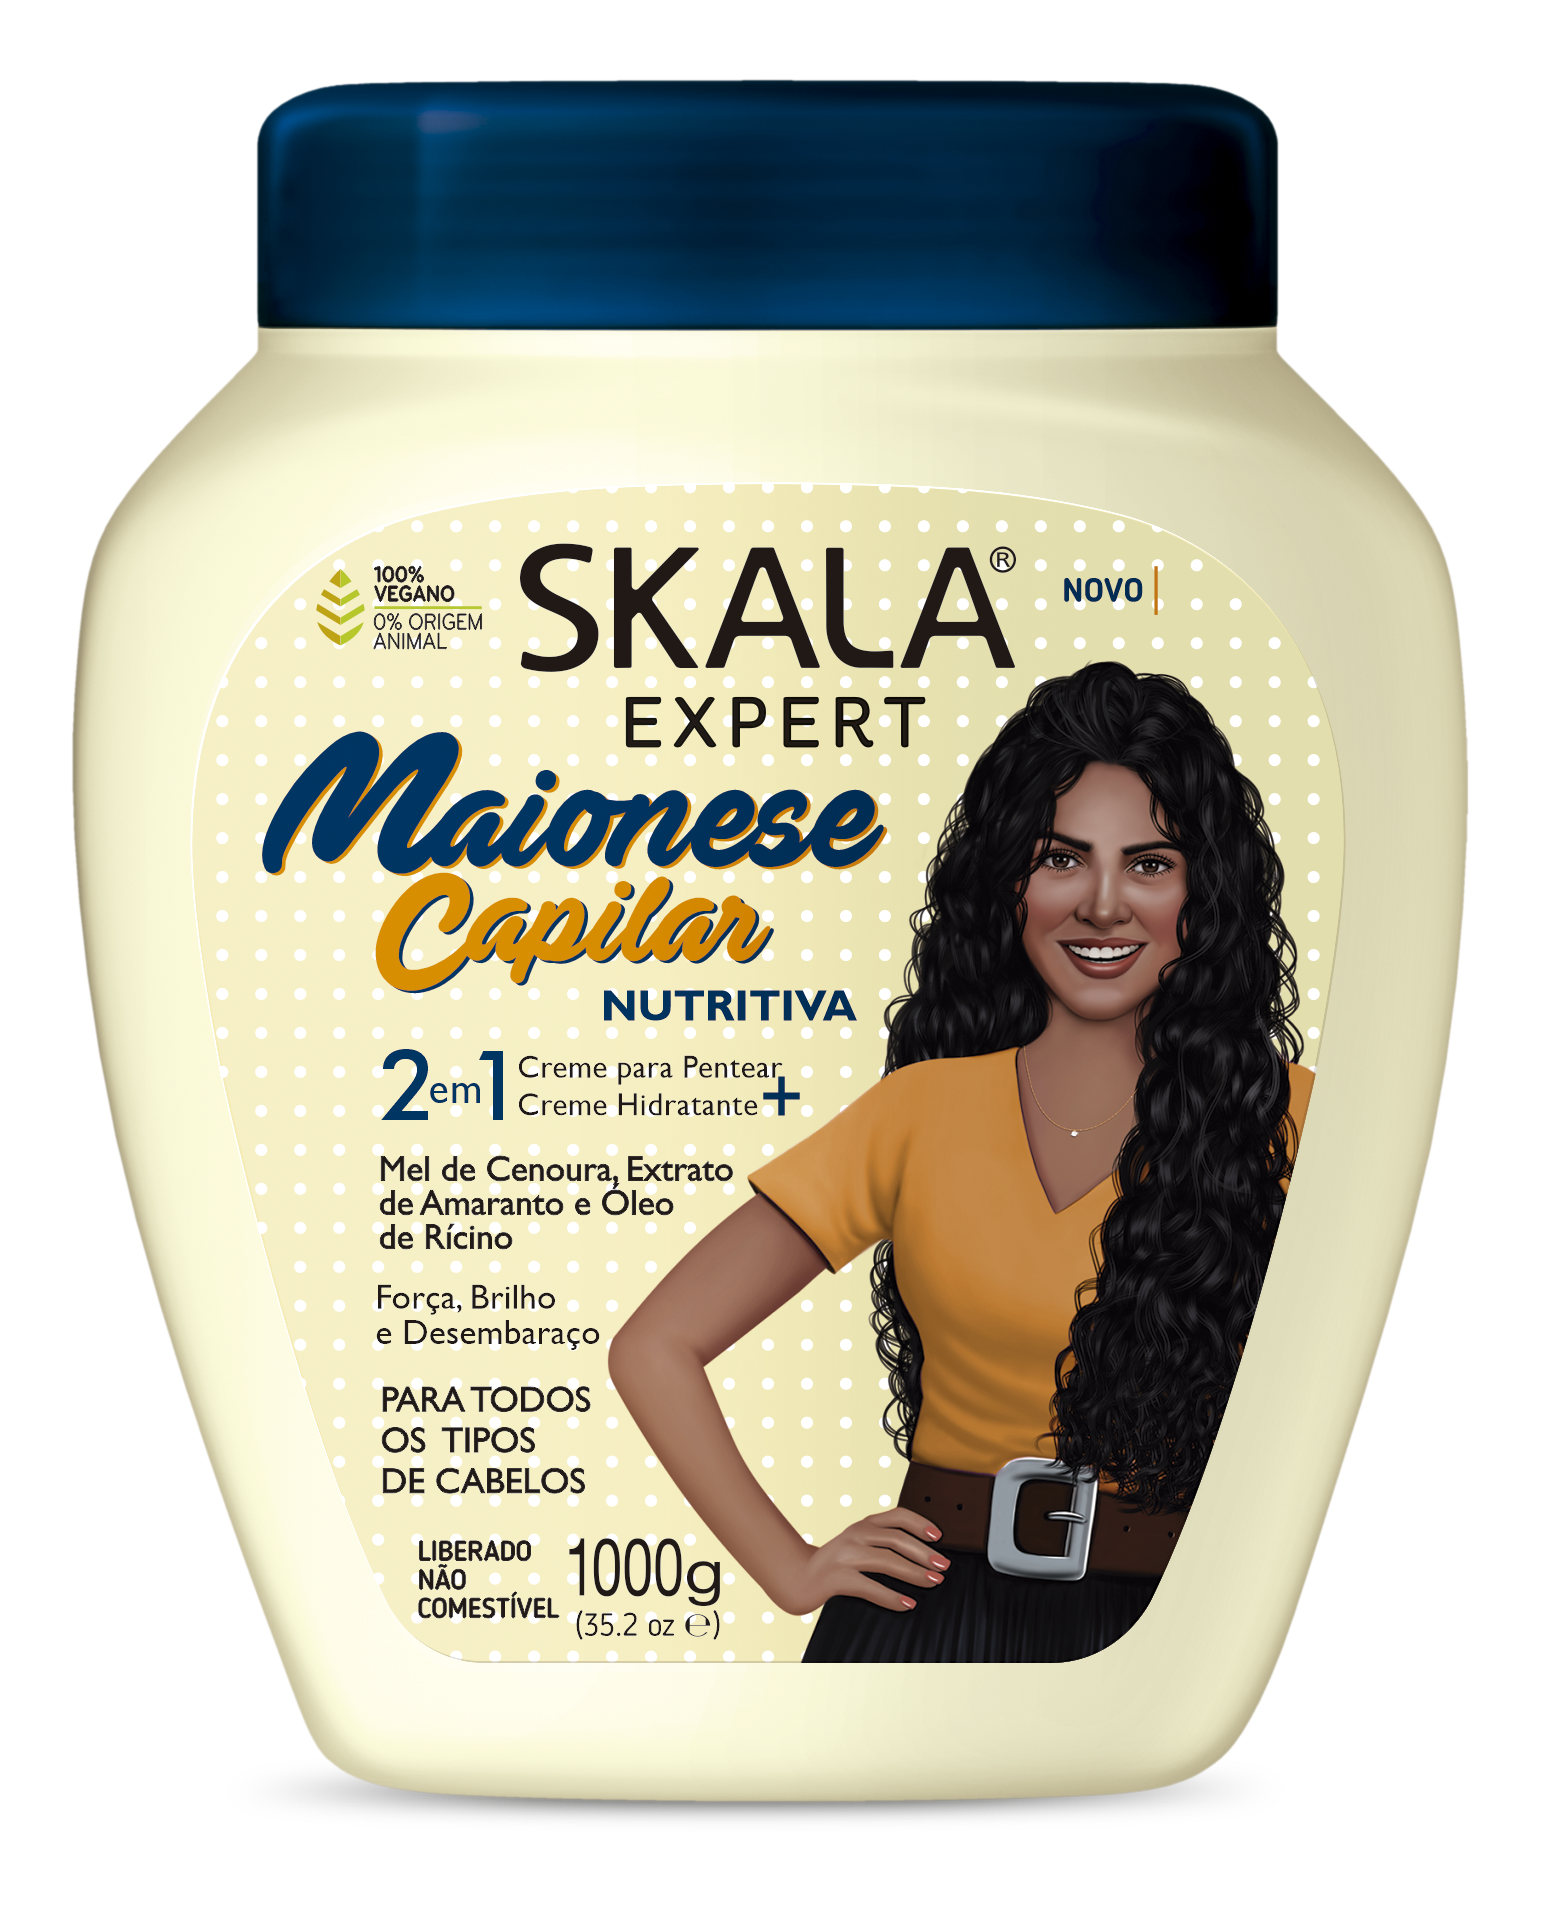 Skala Hair Cream Creme De Tratamento Maionese Capilar Nutritiva / Nutritive Cream Treatment Capillary Mayonnaise Treatment Cream - Skala